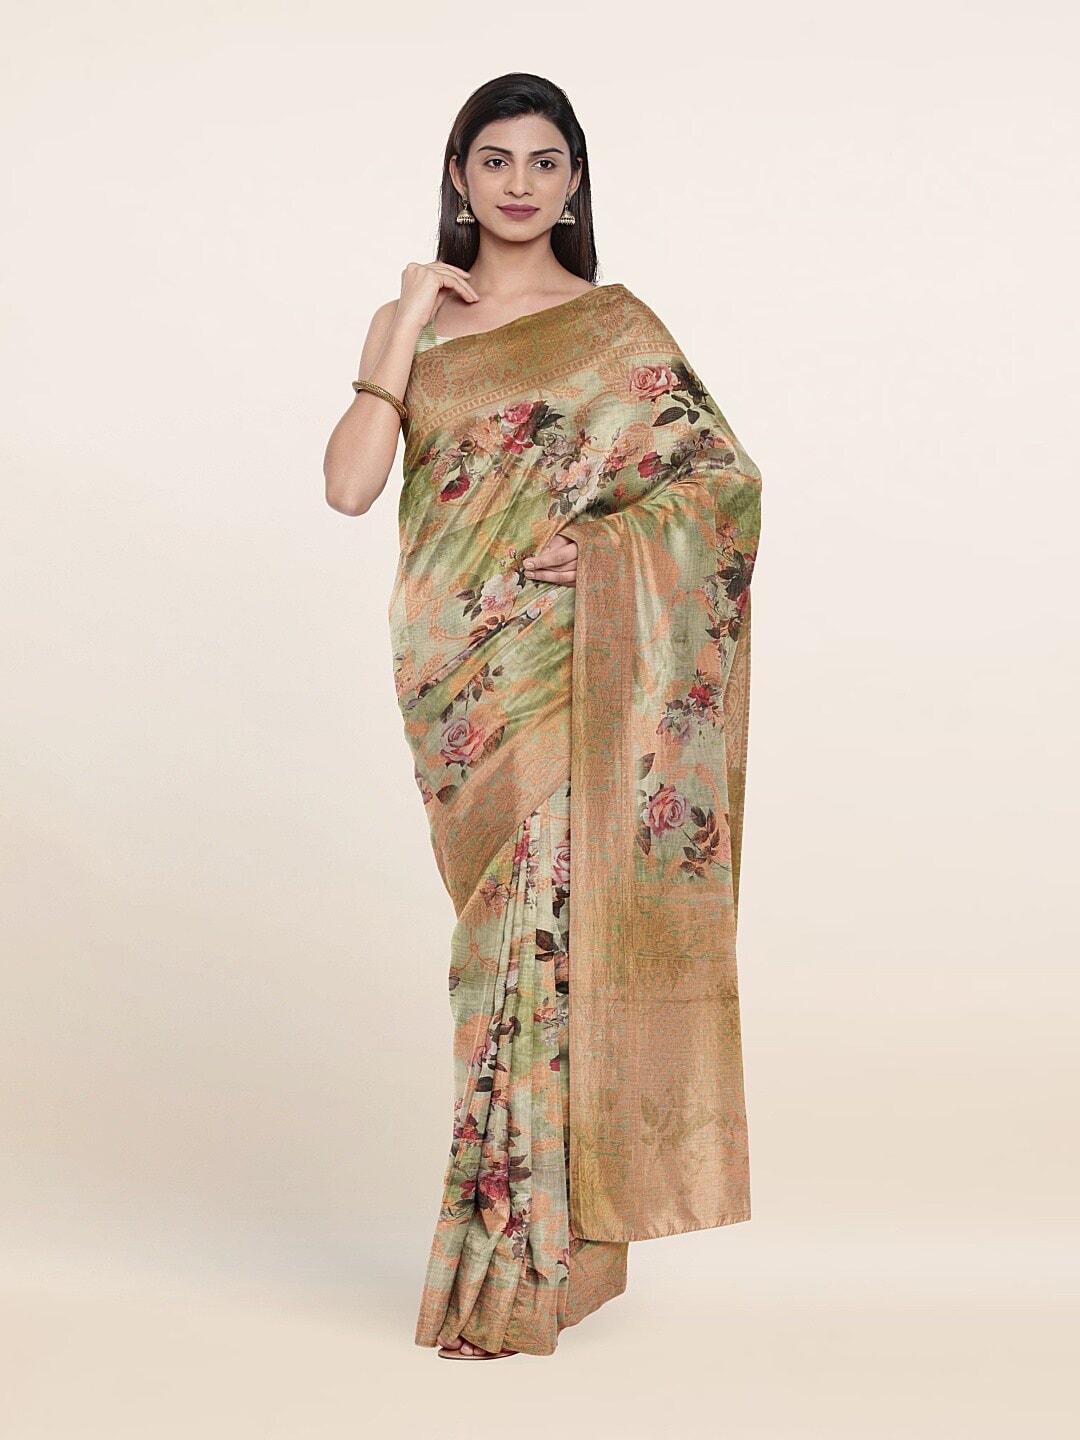 Pothys Green & Copper-Toned Floral Zari Art Silk Saree Price in India